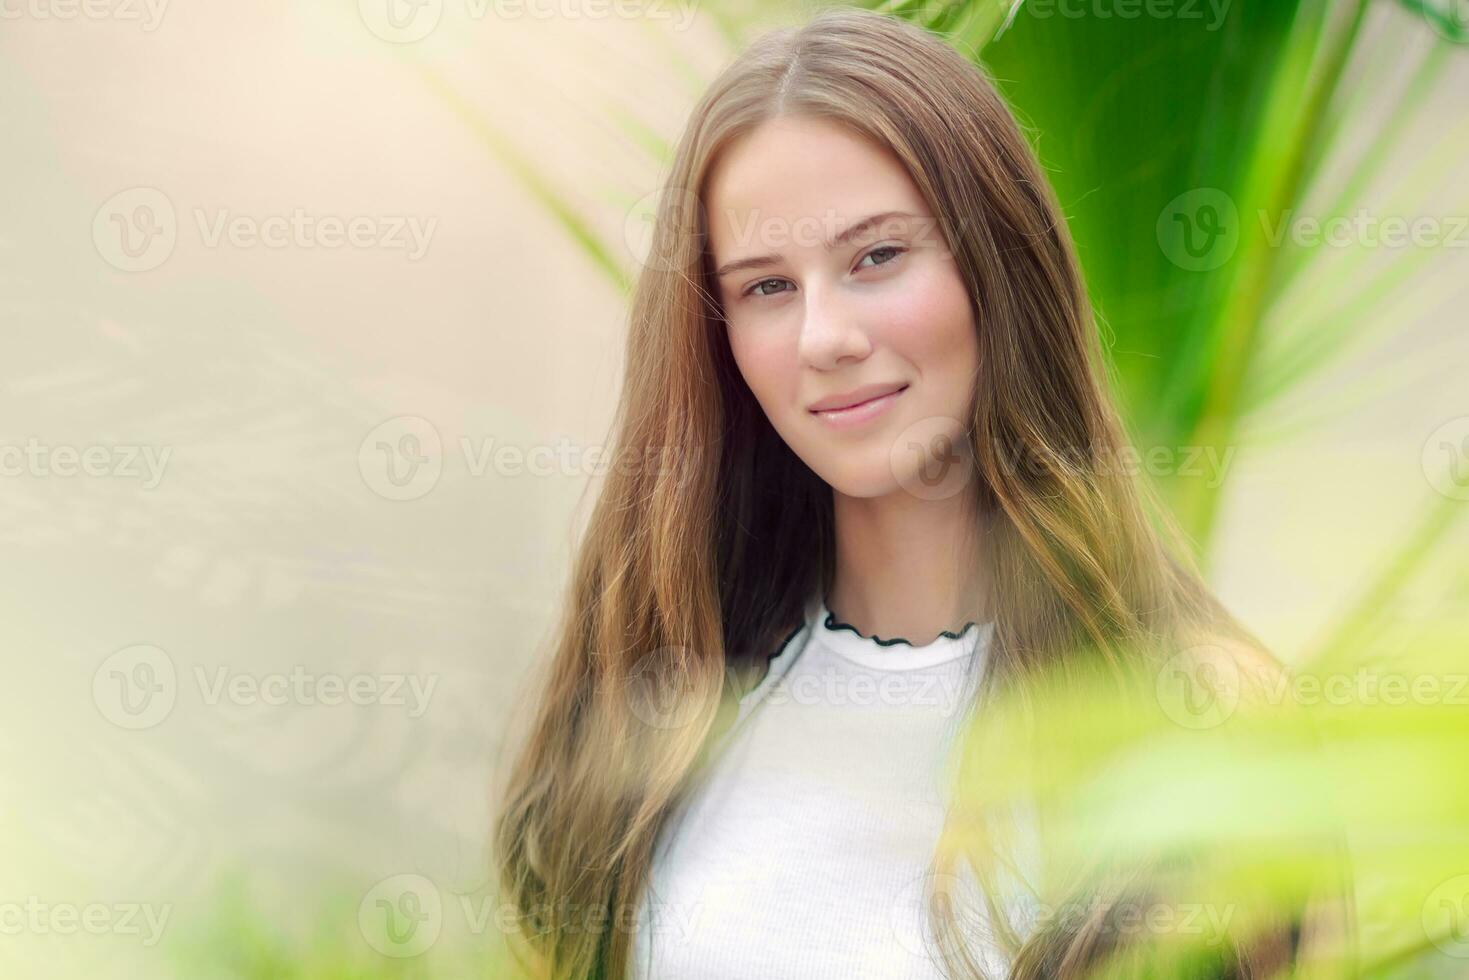 Beautiful youthful girl portrait photo